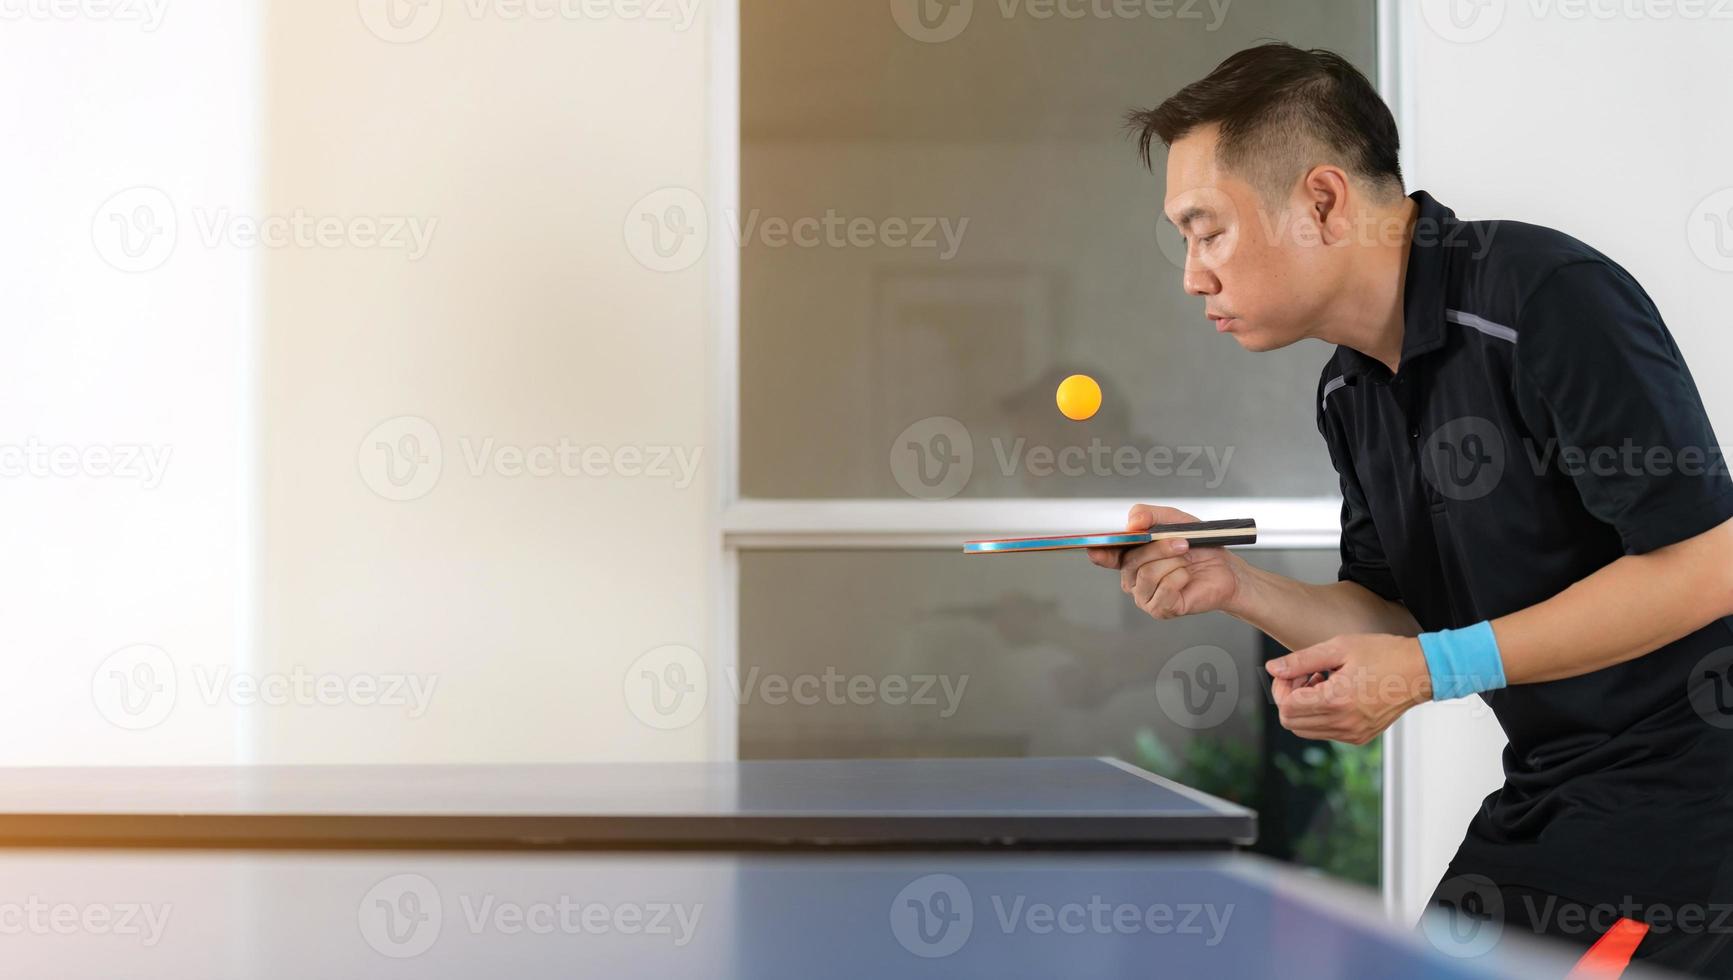 maschio giocando a ping pong con racchetta e palla in un palazzetto dello sport foto